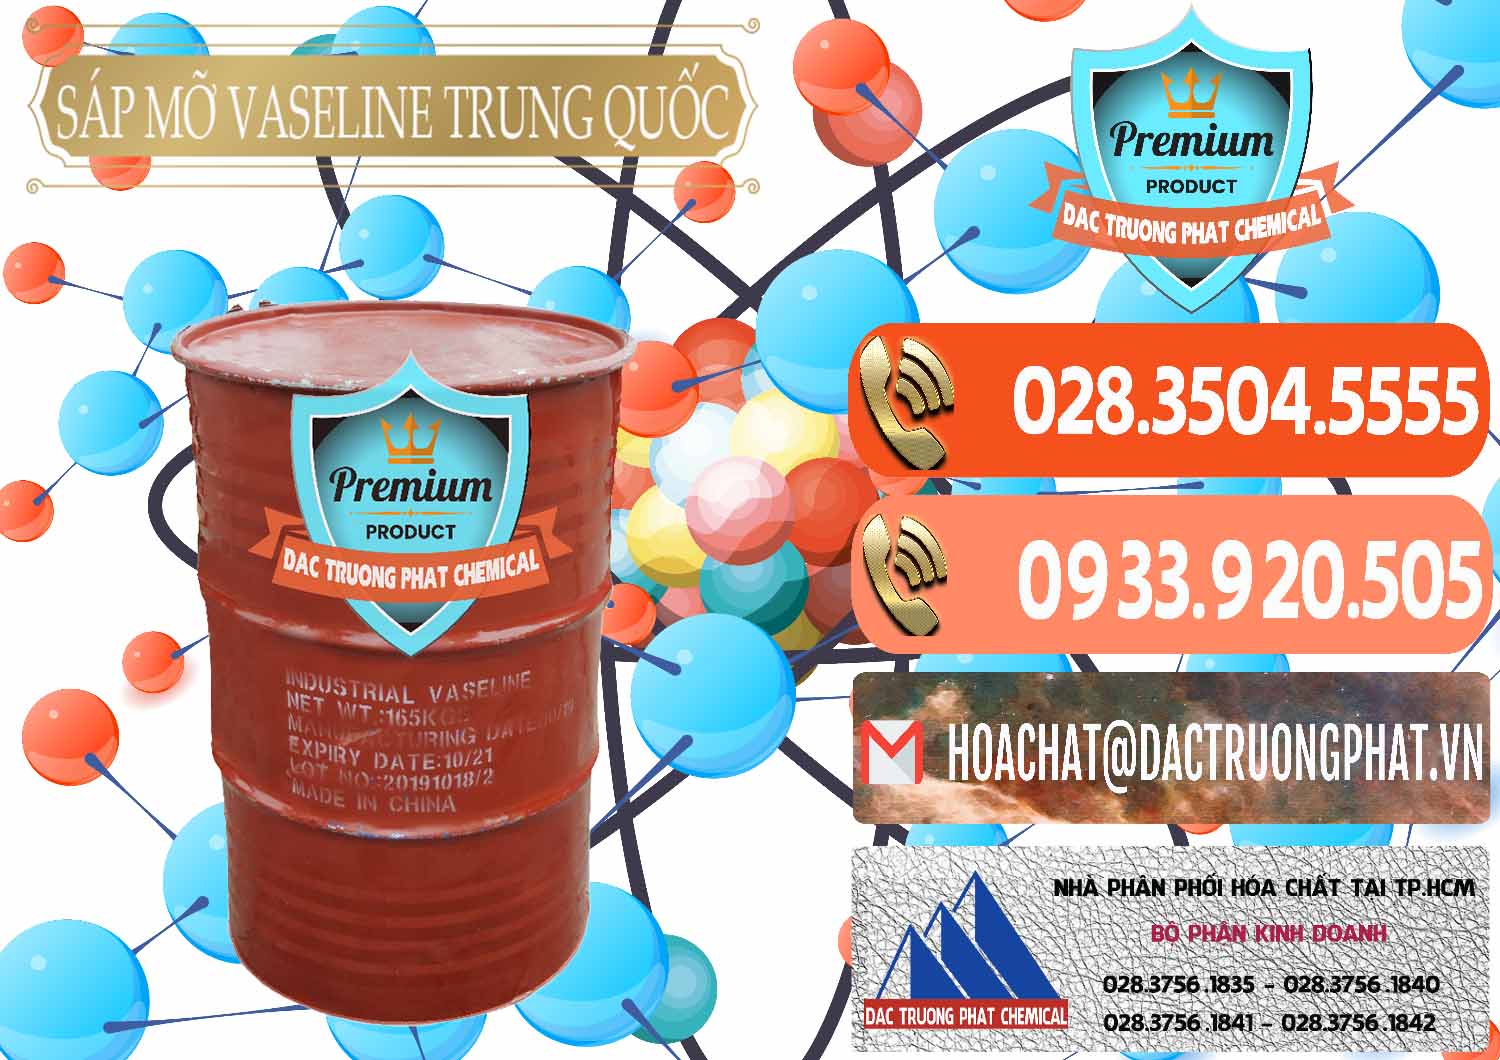 Đơn vị chuyên bán - phân phối Sáp Mỡ Vaseline Trung Quốc China - 0122 - Công ty kinh doanh & phân phối hóa chất tại TP.HCM - hoachatmientay.com